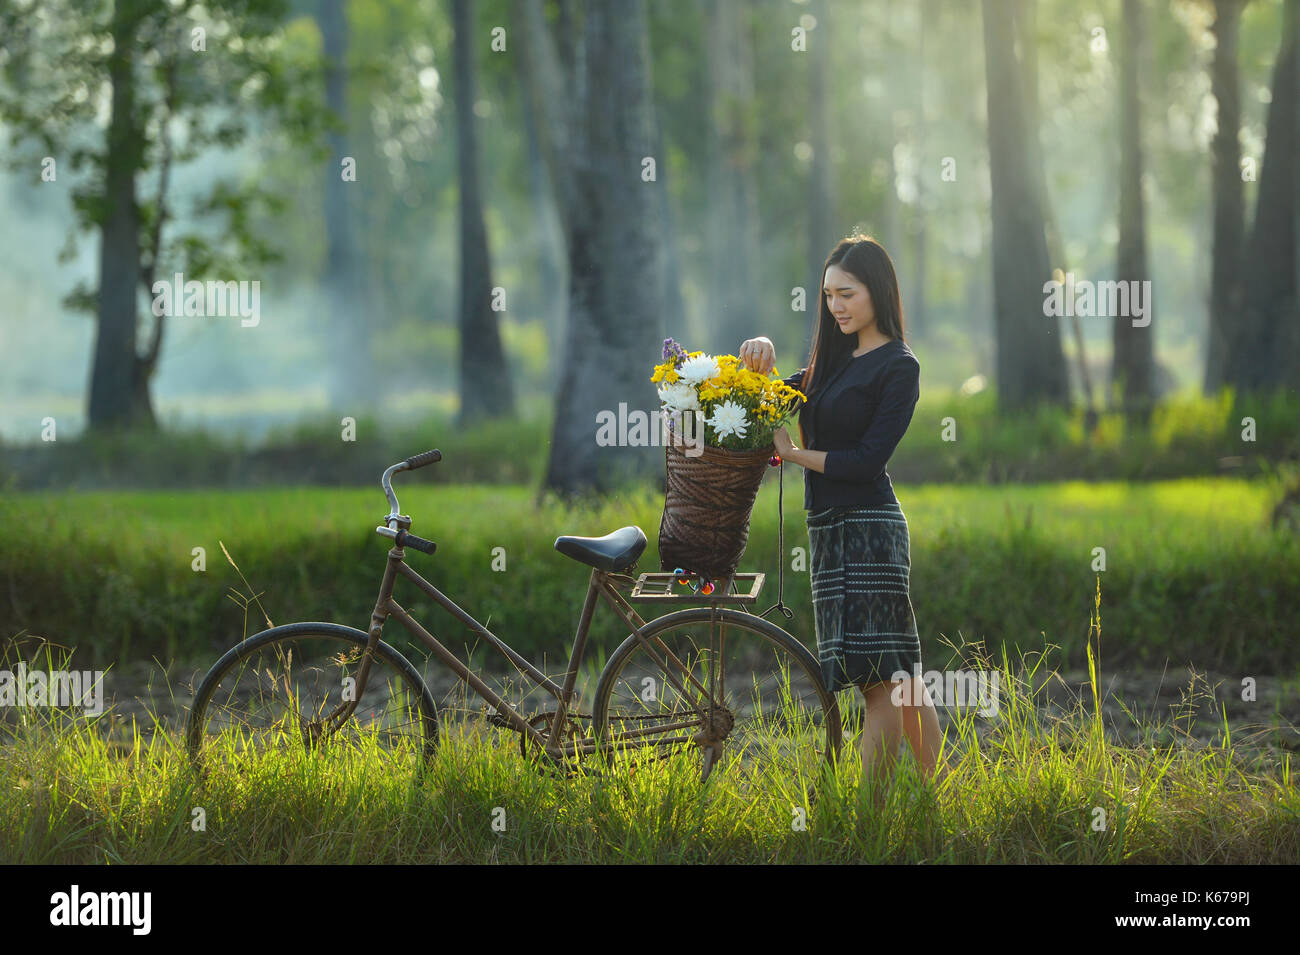 Frau mit einem Korb mit Blumen auf ihrem Fahrrad, Thailand Stockfoto